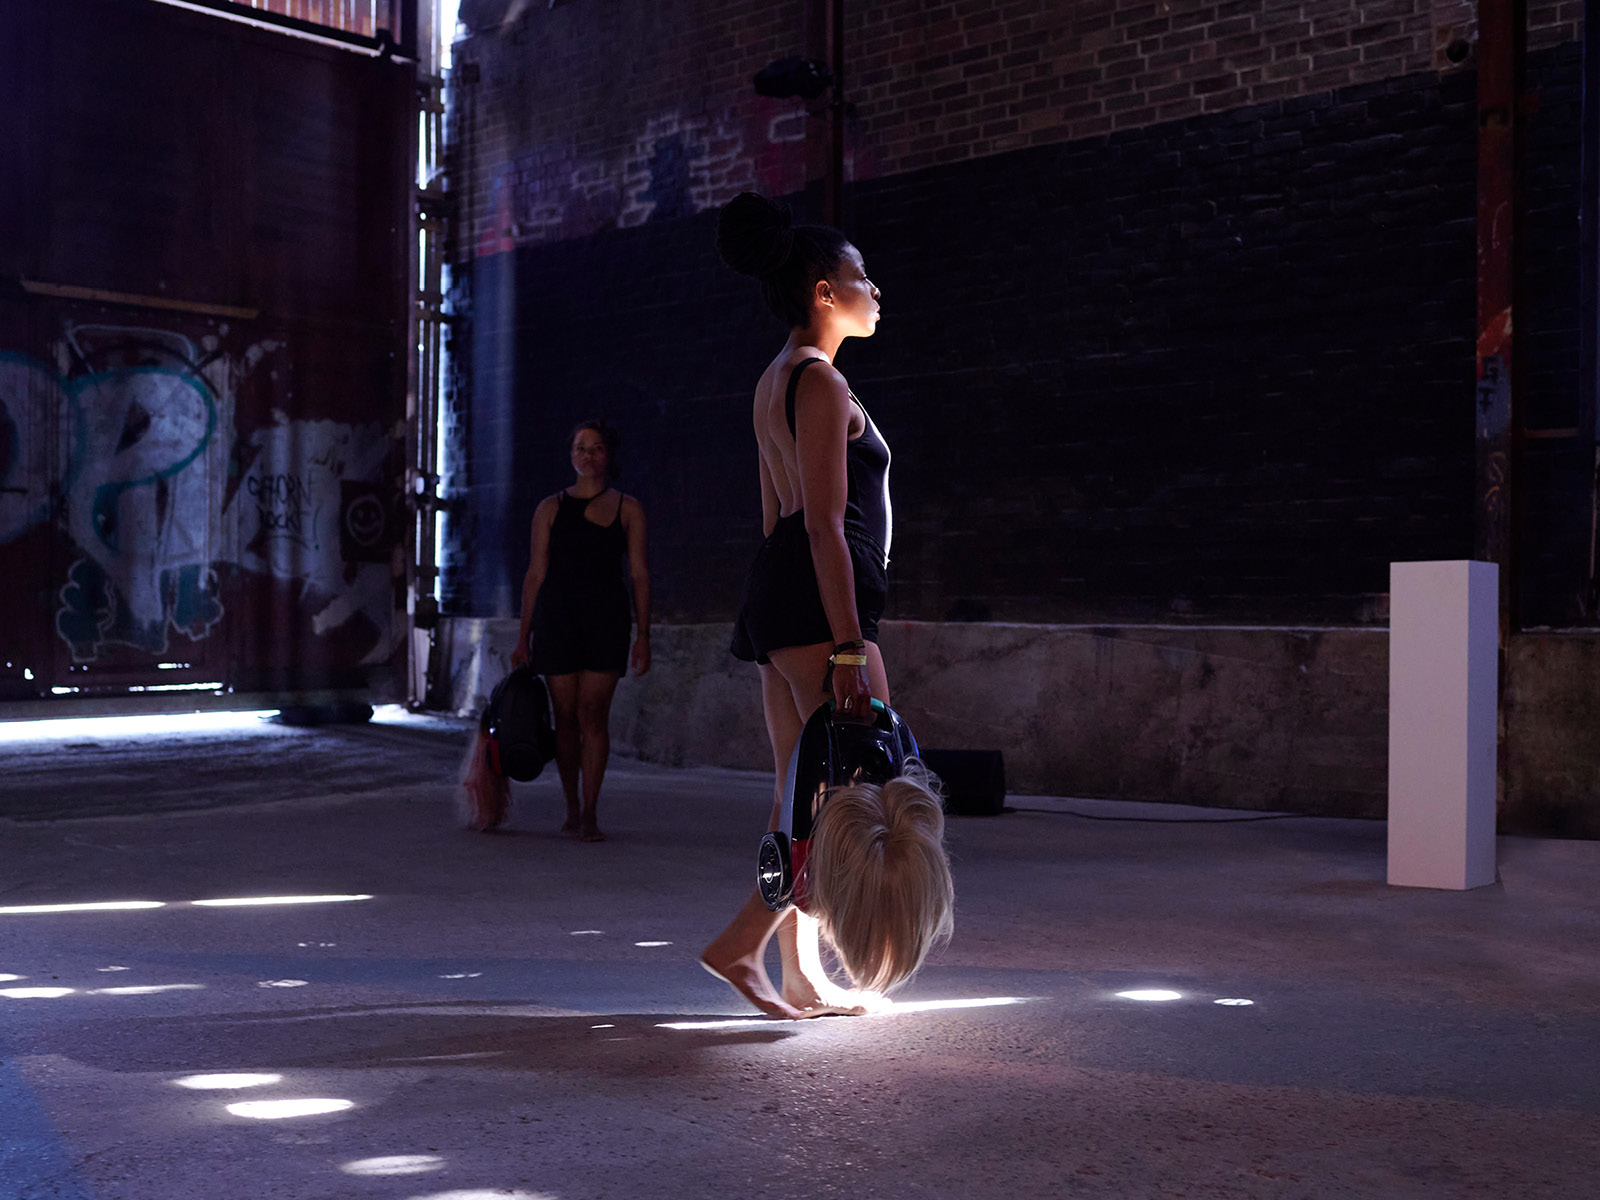 Zwei Frauen wandern in schwarzen Bodies durch einen Raum, in den vereinzelt Sonnenstrahlen scheinen.